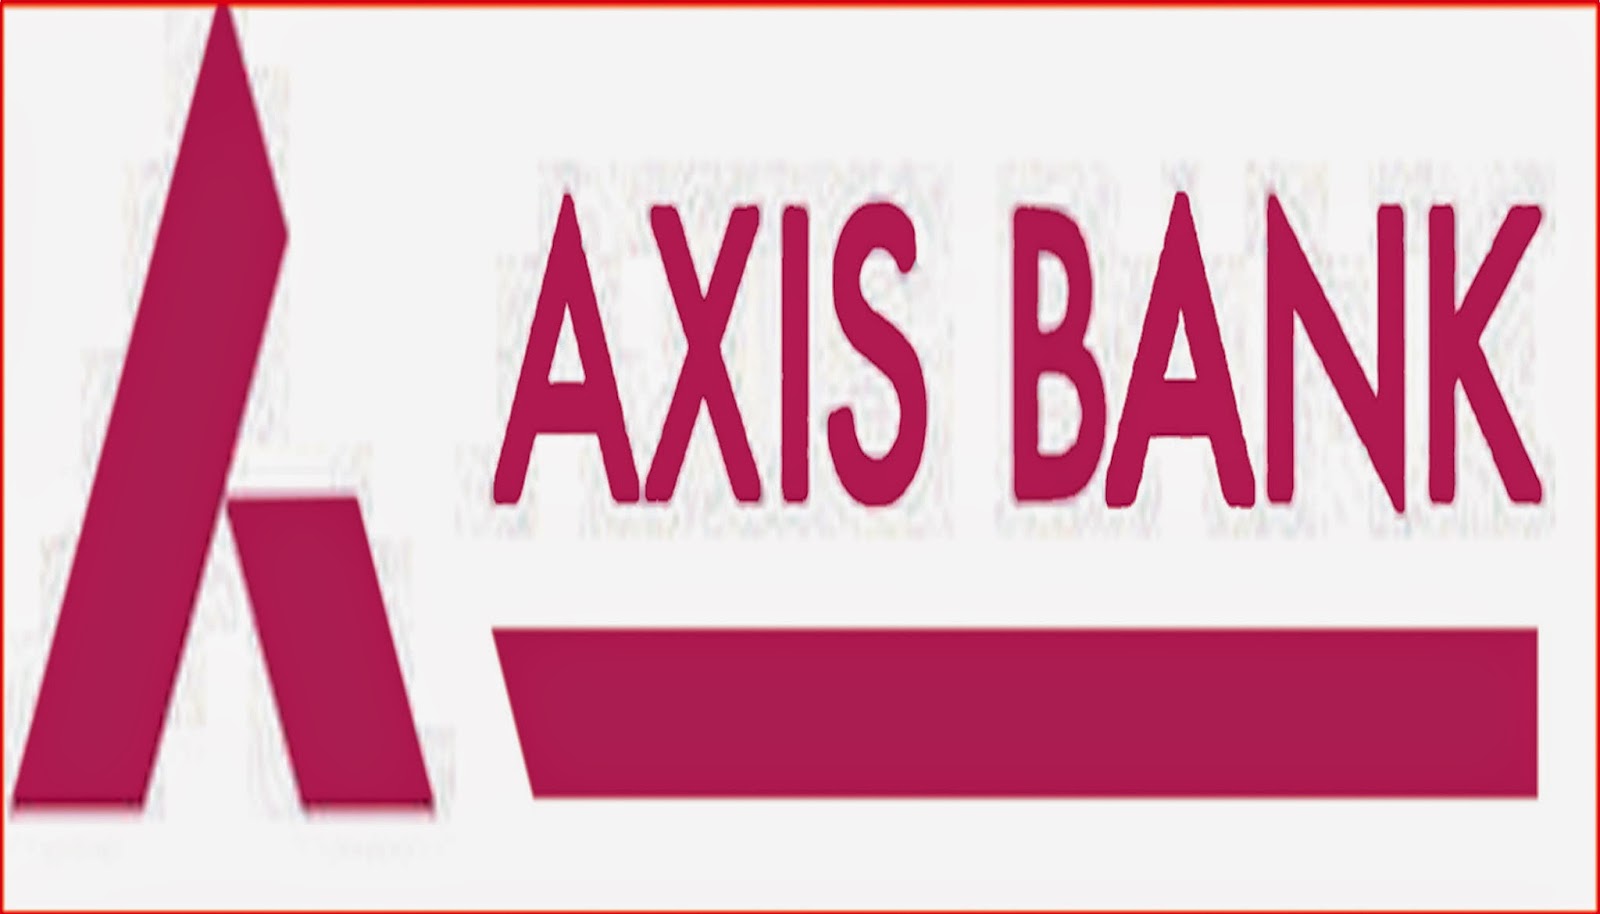 AXIS-BANK.jpg